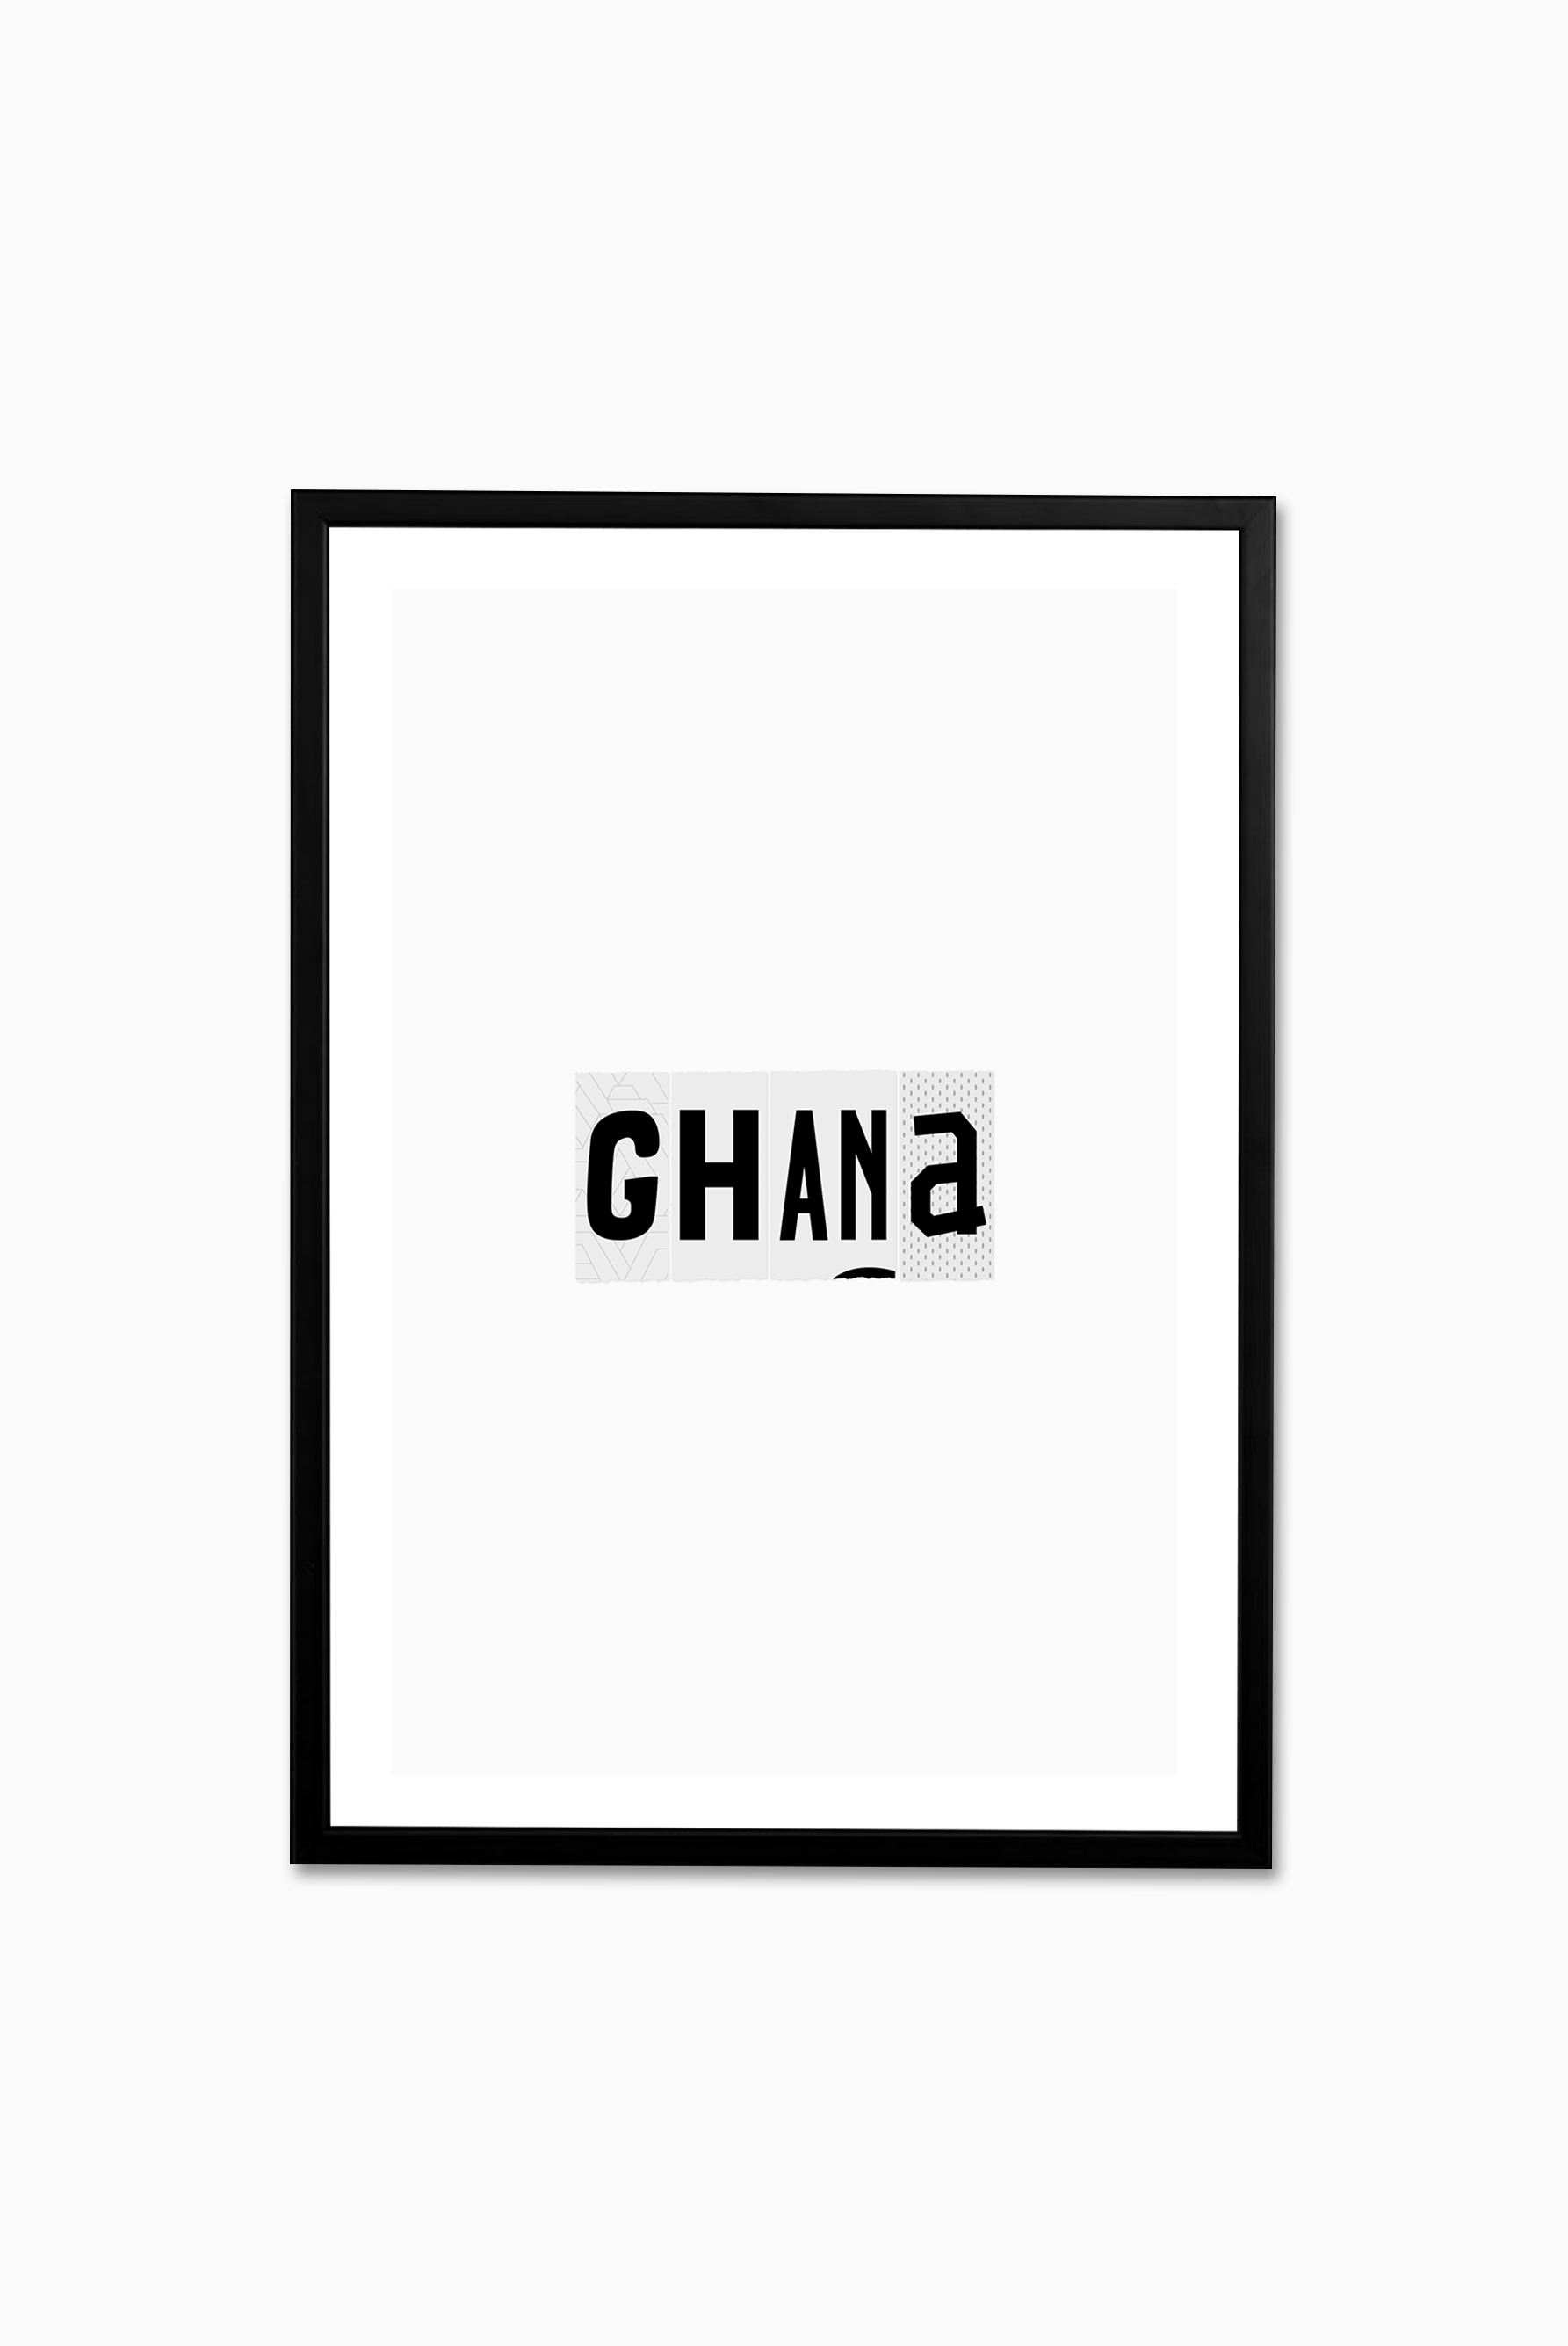 Ghana Wear and Tear / Print